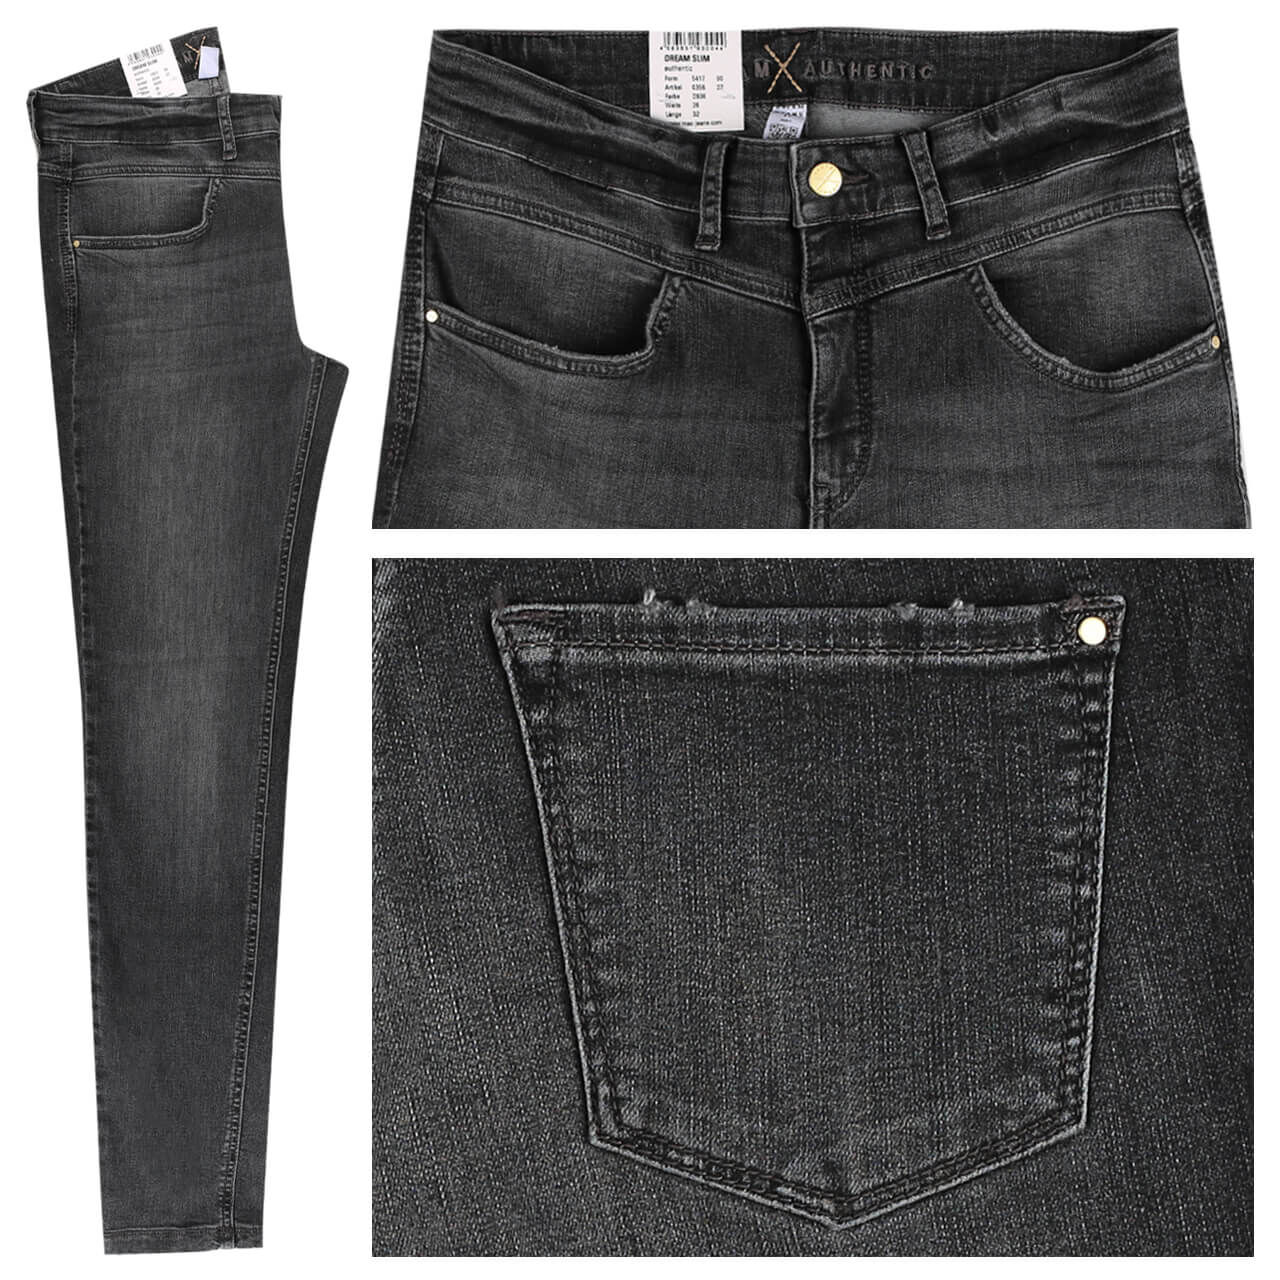 MAC Jeans Dream Slim für Damen in Dunkelgrau angewaschen, FarbNr.: D936